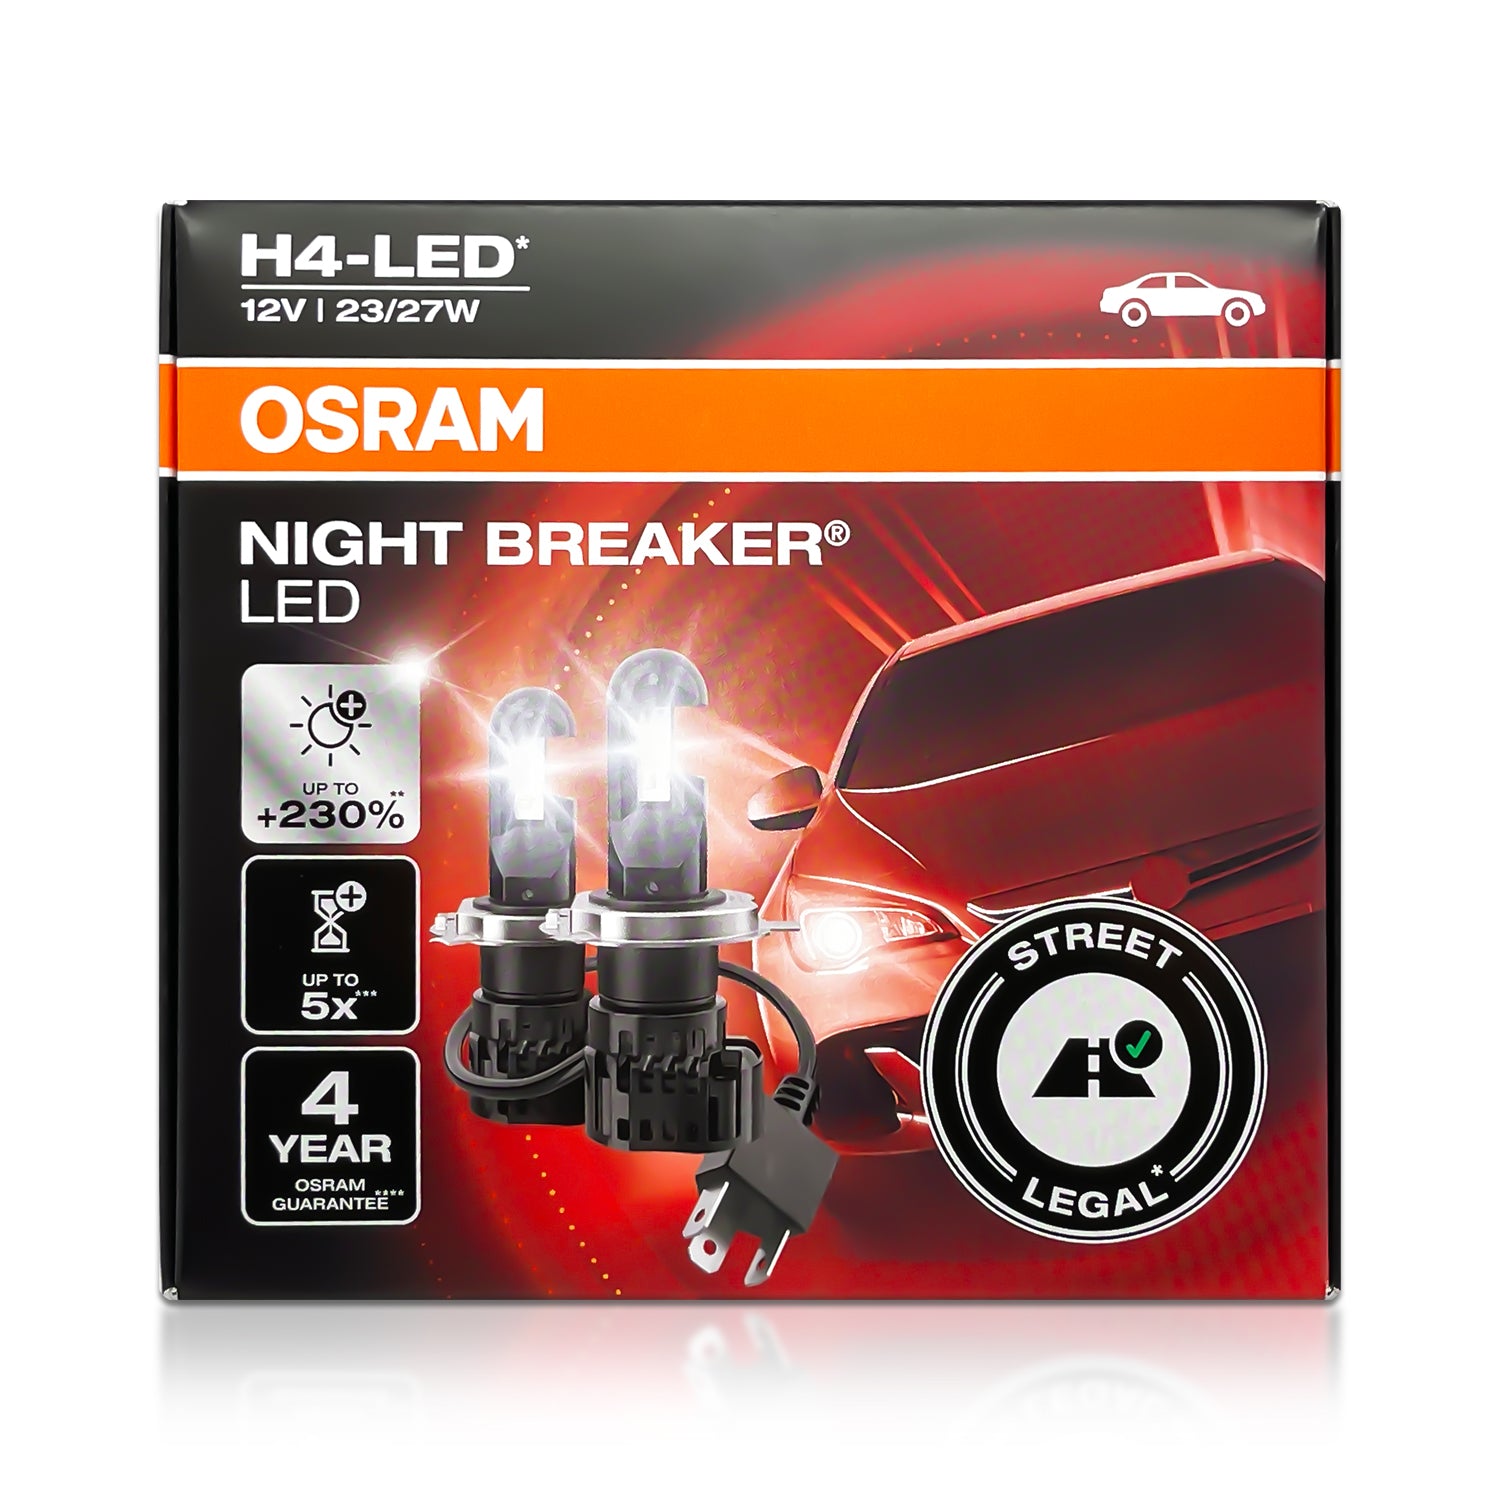 KIT LED N-BREAKER H4 12V 27/23W 6000K LEG OSRAM